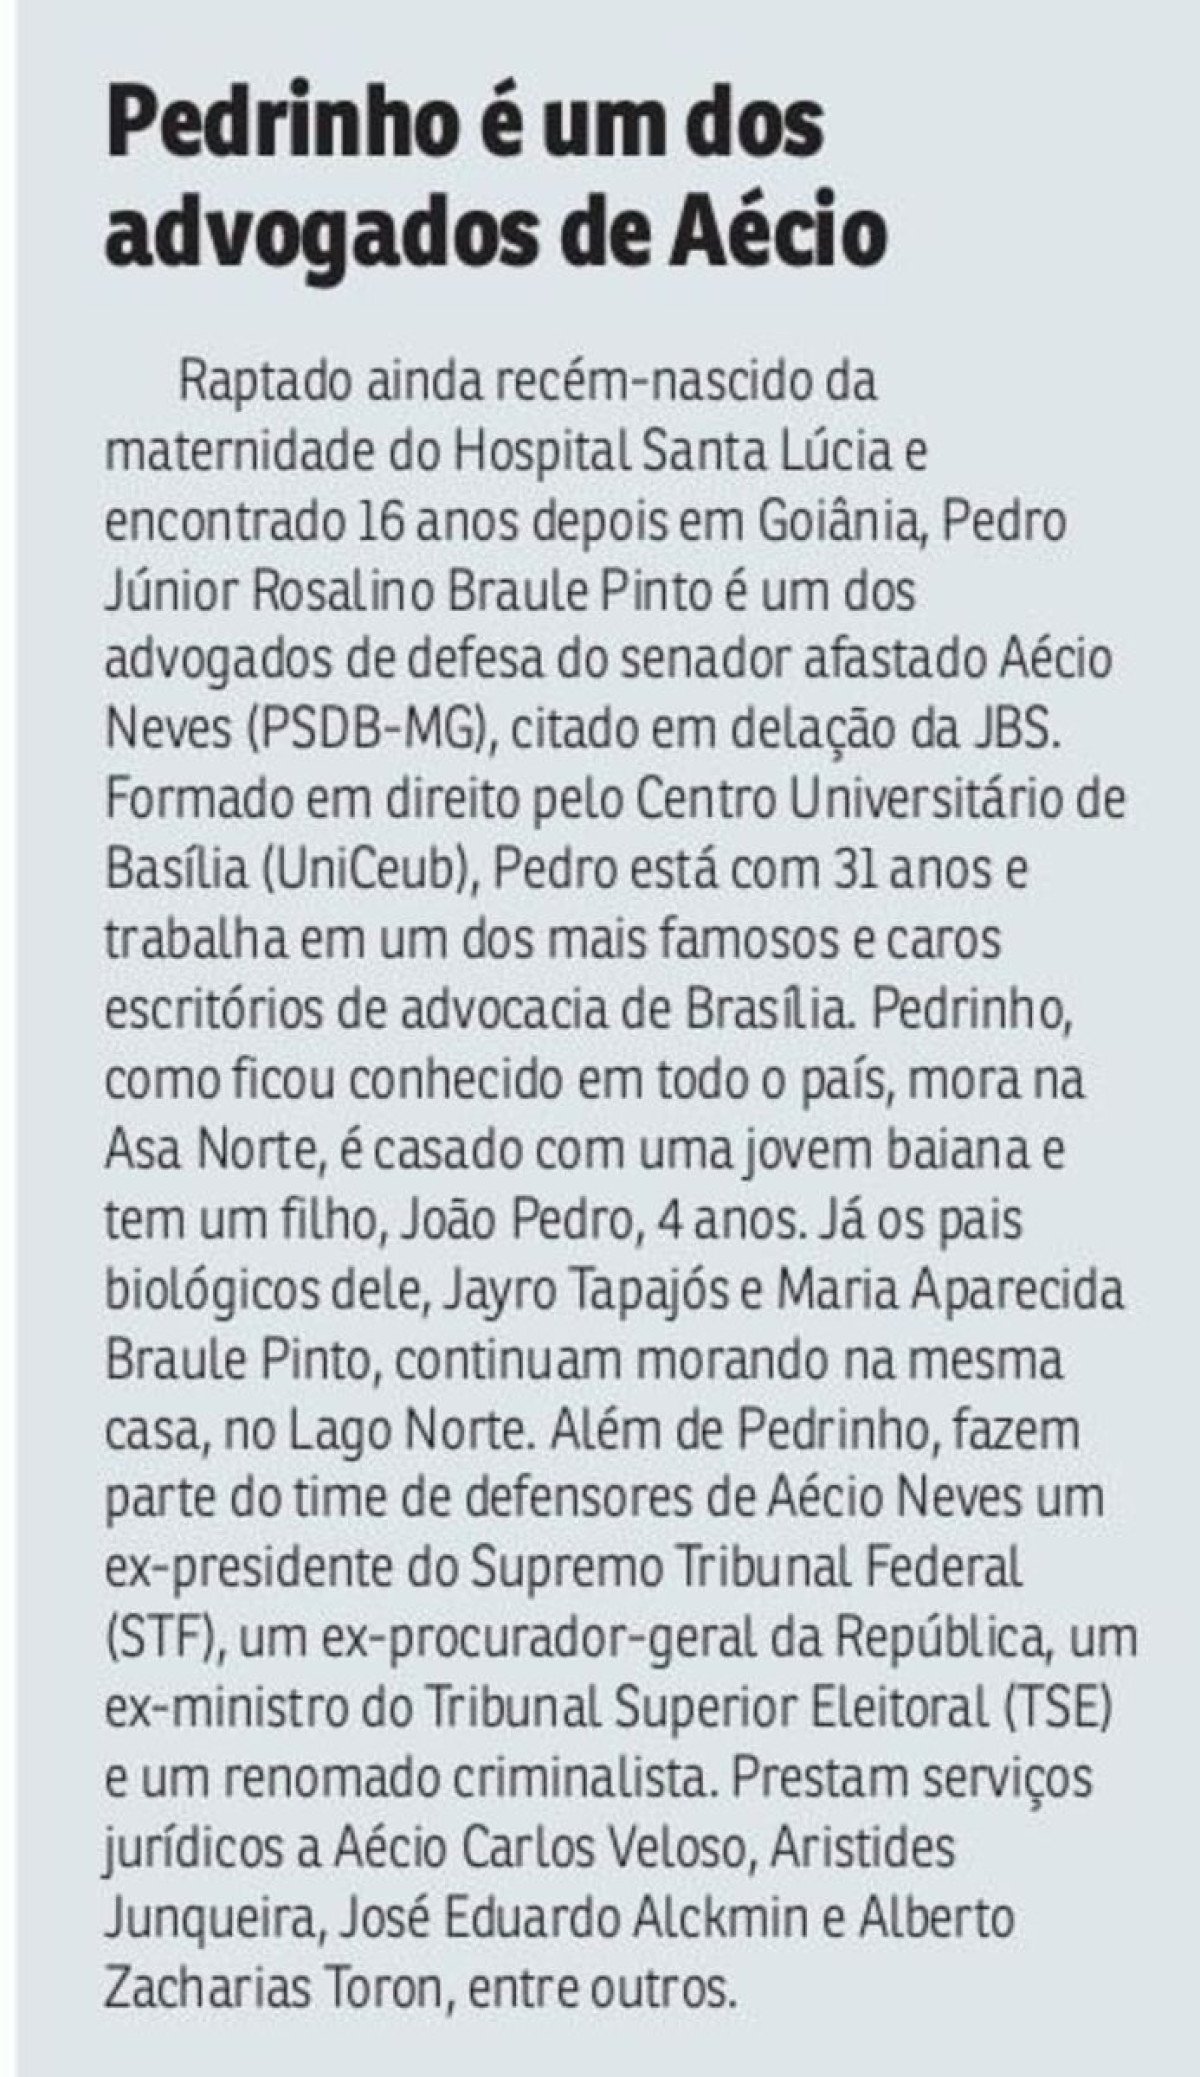 Matéria publicada sobre a participação de Pedrinho na defesa de Aécio Neves, em 1º de junho de 2017